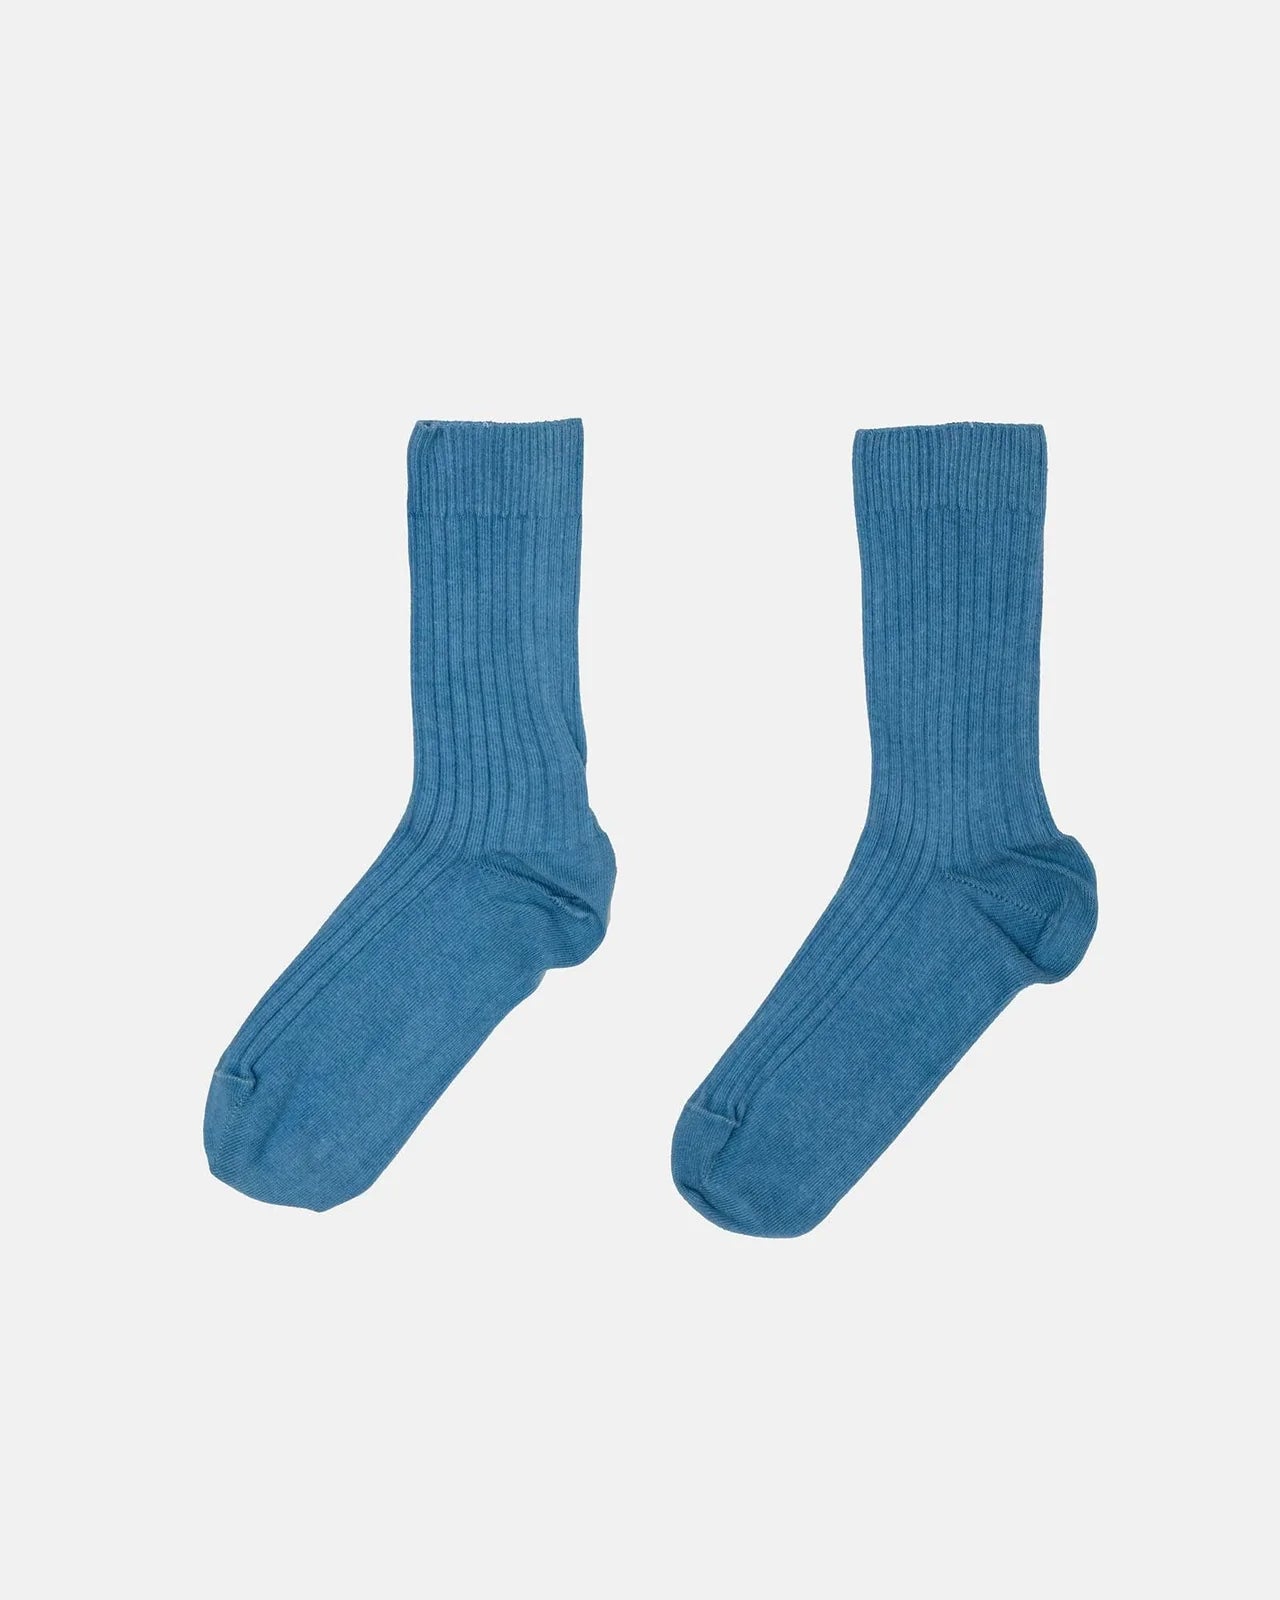 Rib Ankle Socks / Mid Isatis Blue